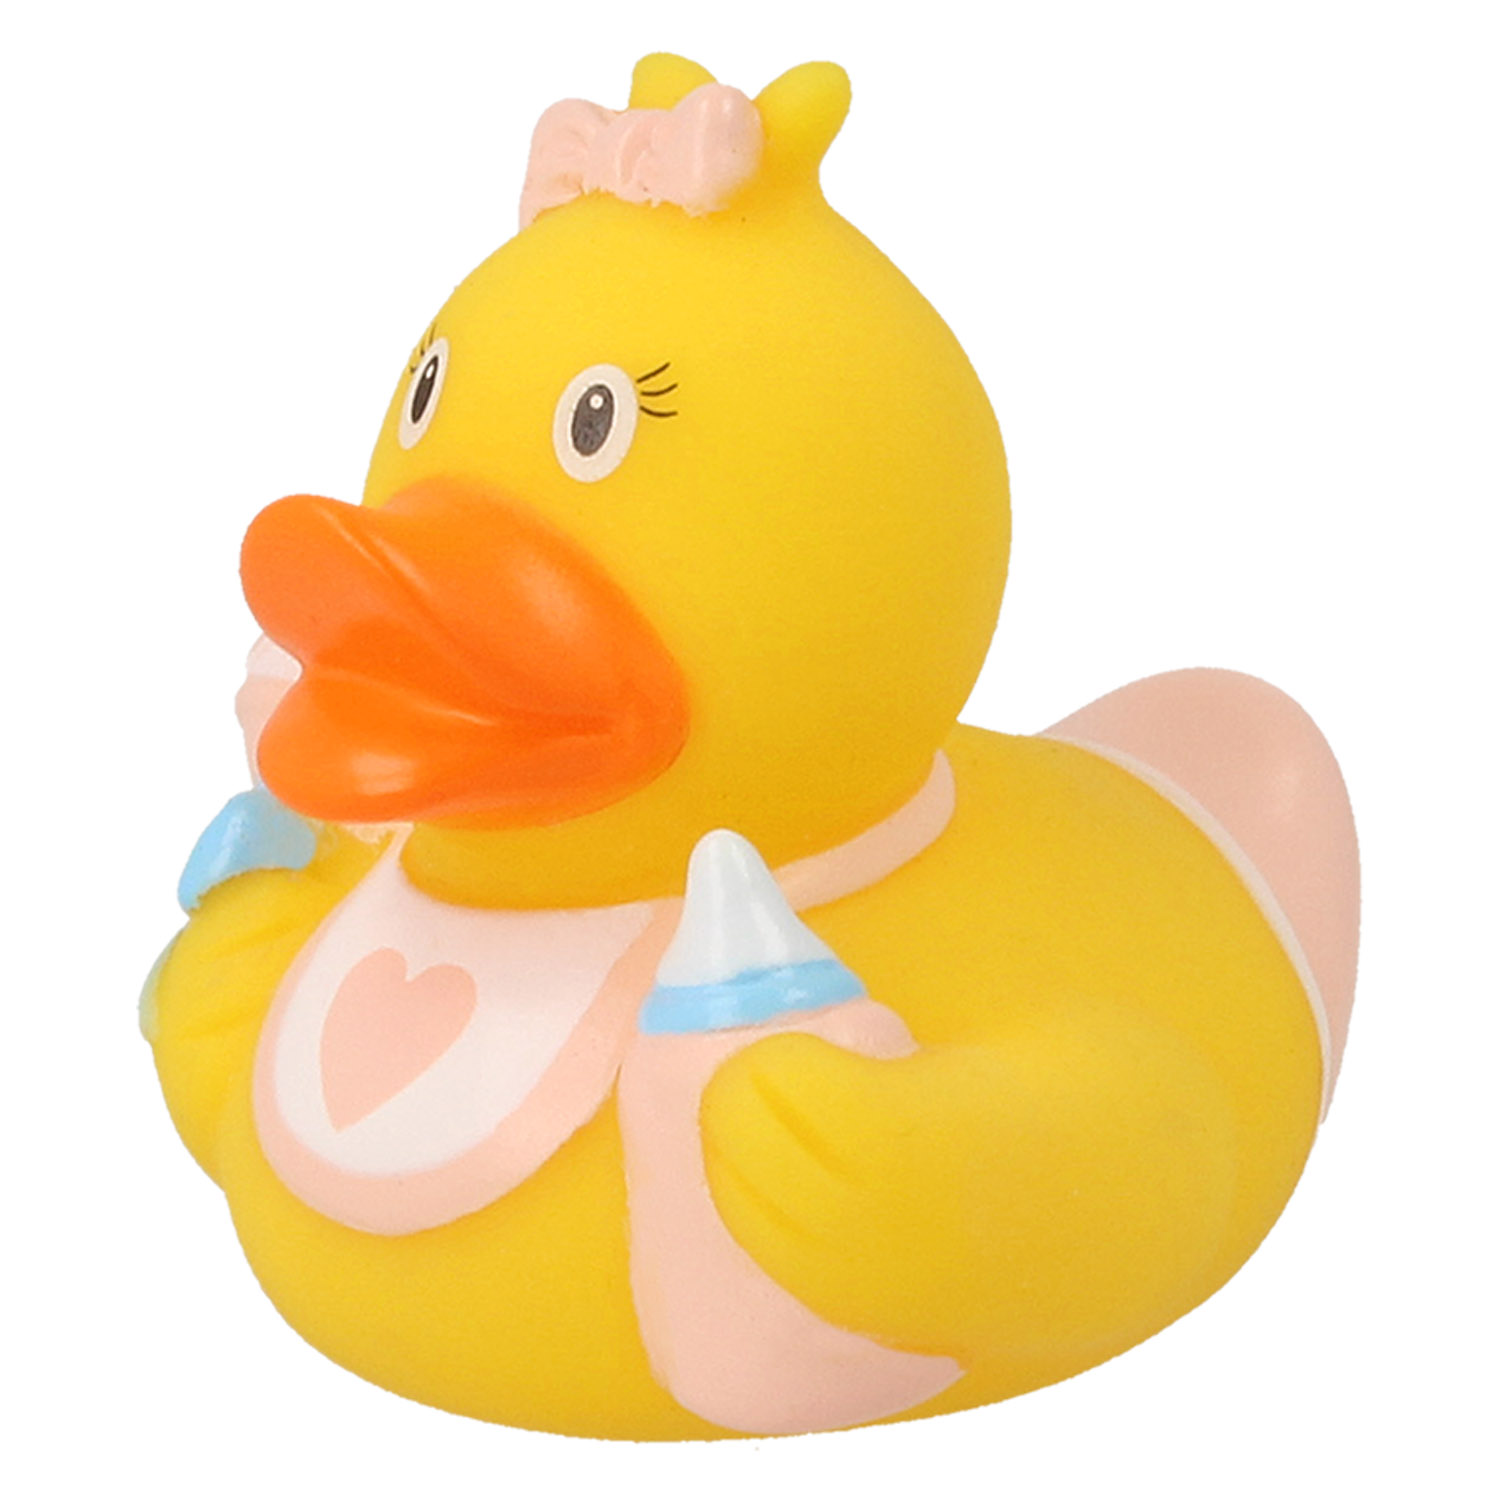 Игрушка Funny ducks для ванной Ребенок девочка уточка 1848 - фото 1